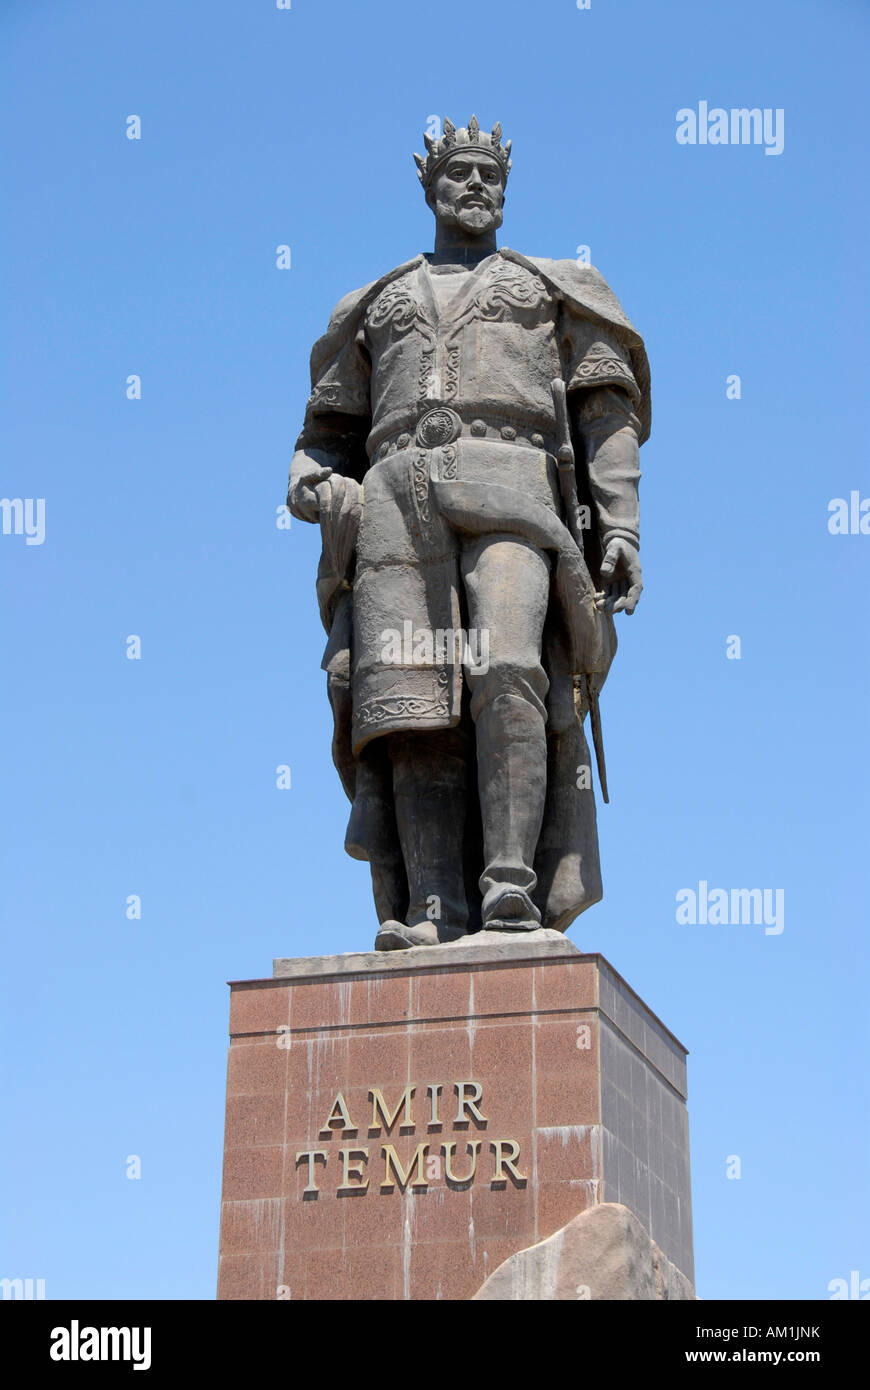 Denkmal-Statue von Amir Timur Shahrisabz Usbekistan Stockfoto